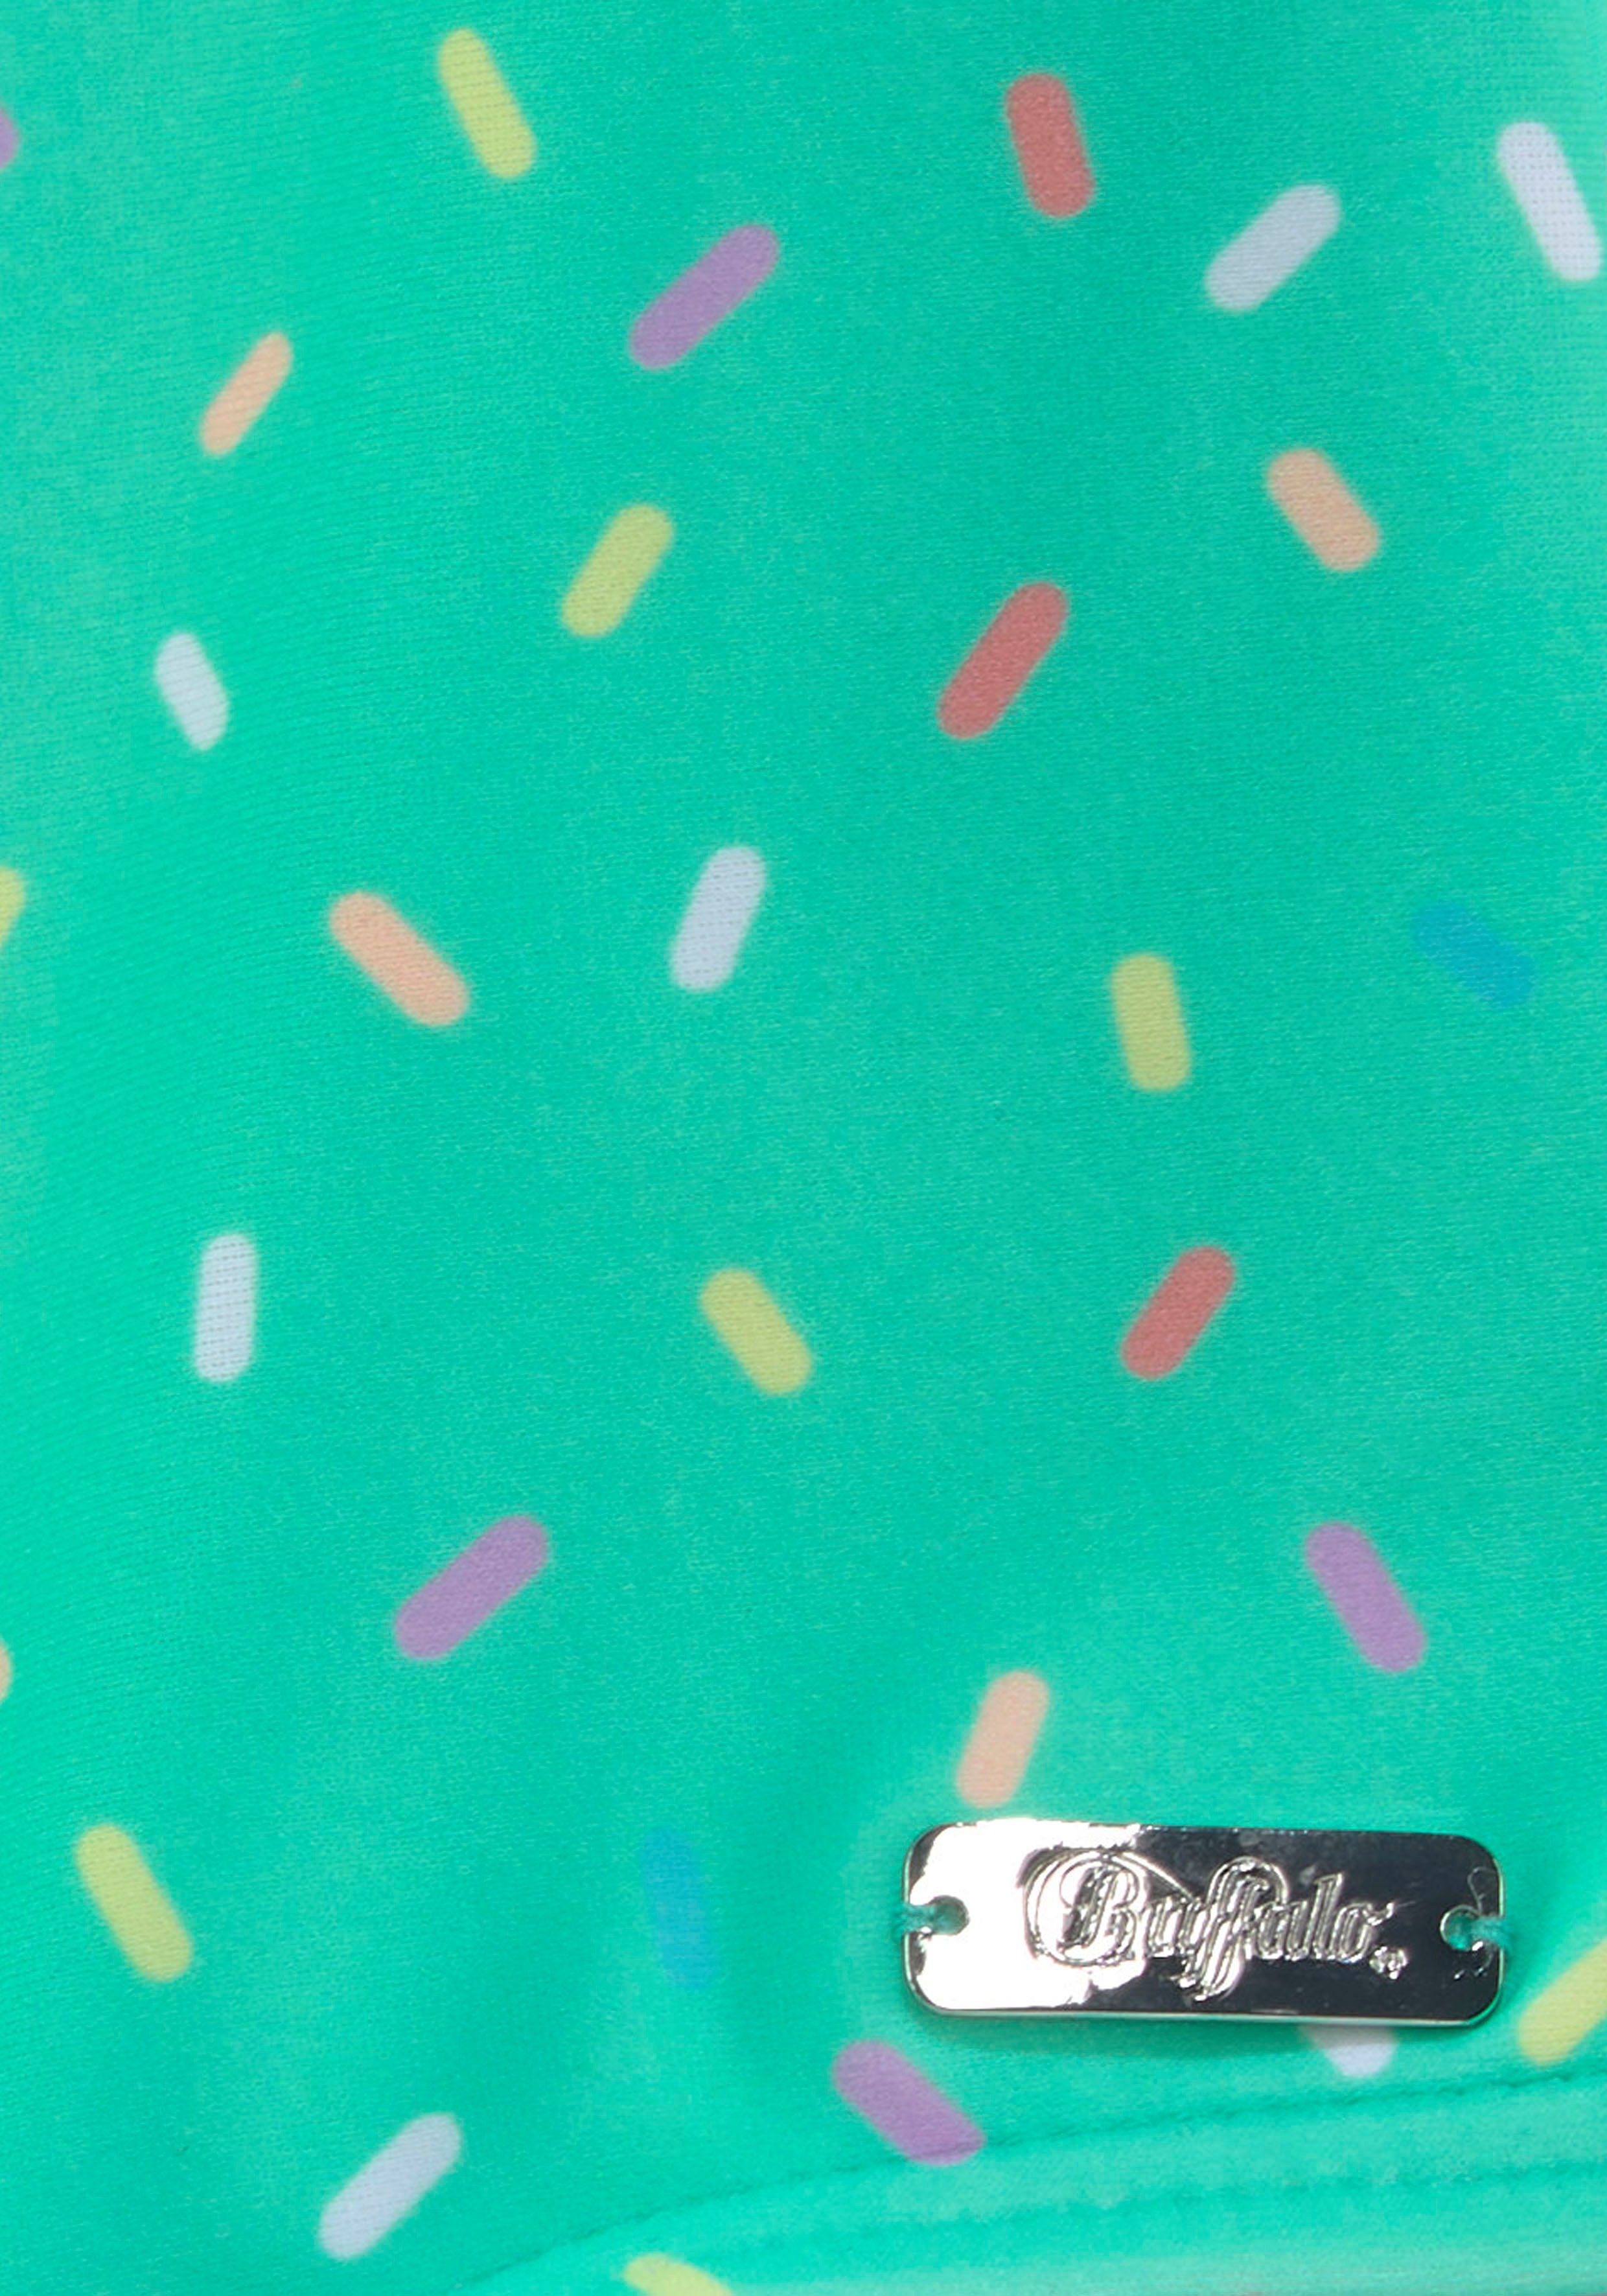 Buffalo Badeanzug Streusel-Druck mint-bedruckt mit Candy Kids